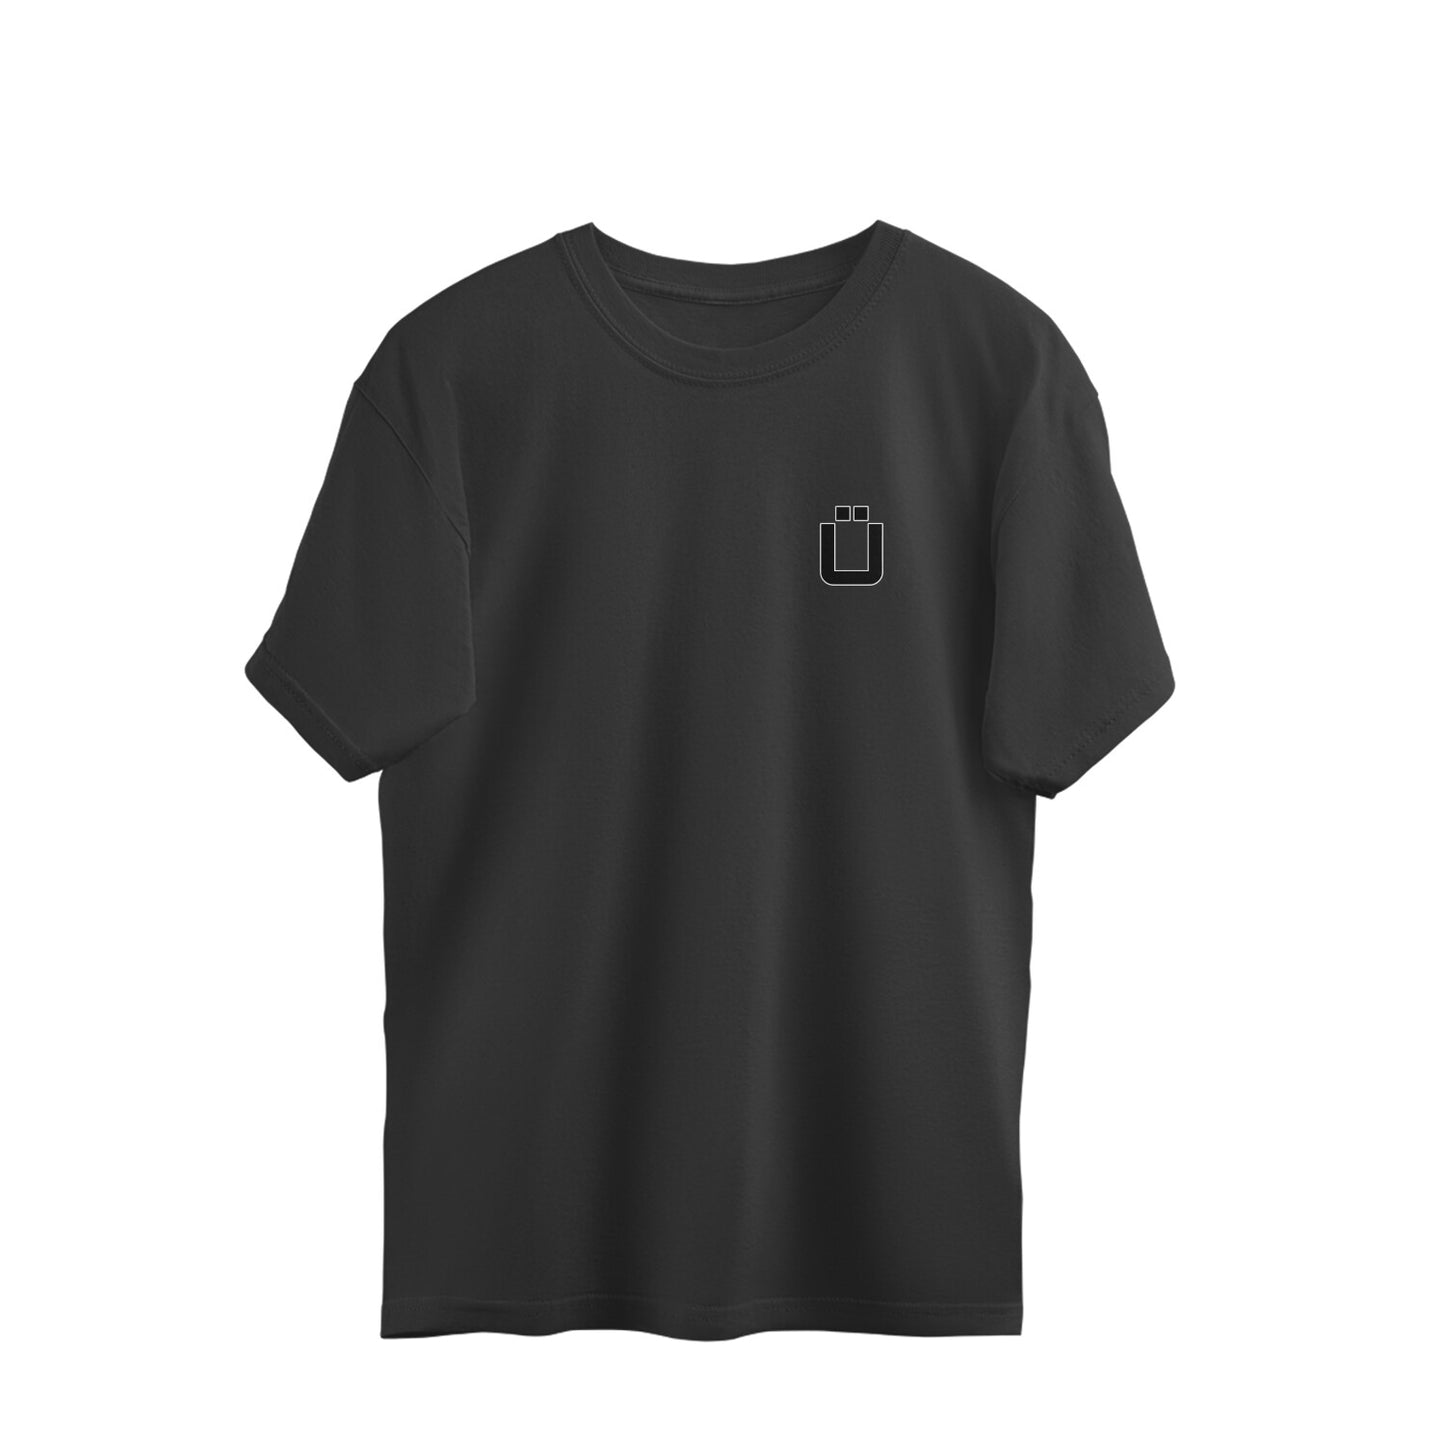 Inuyasha - Oversized T-shirt